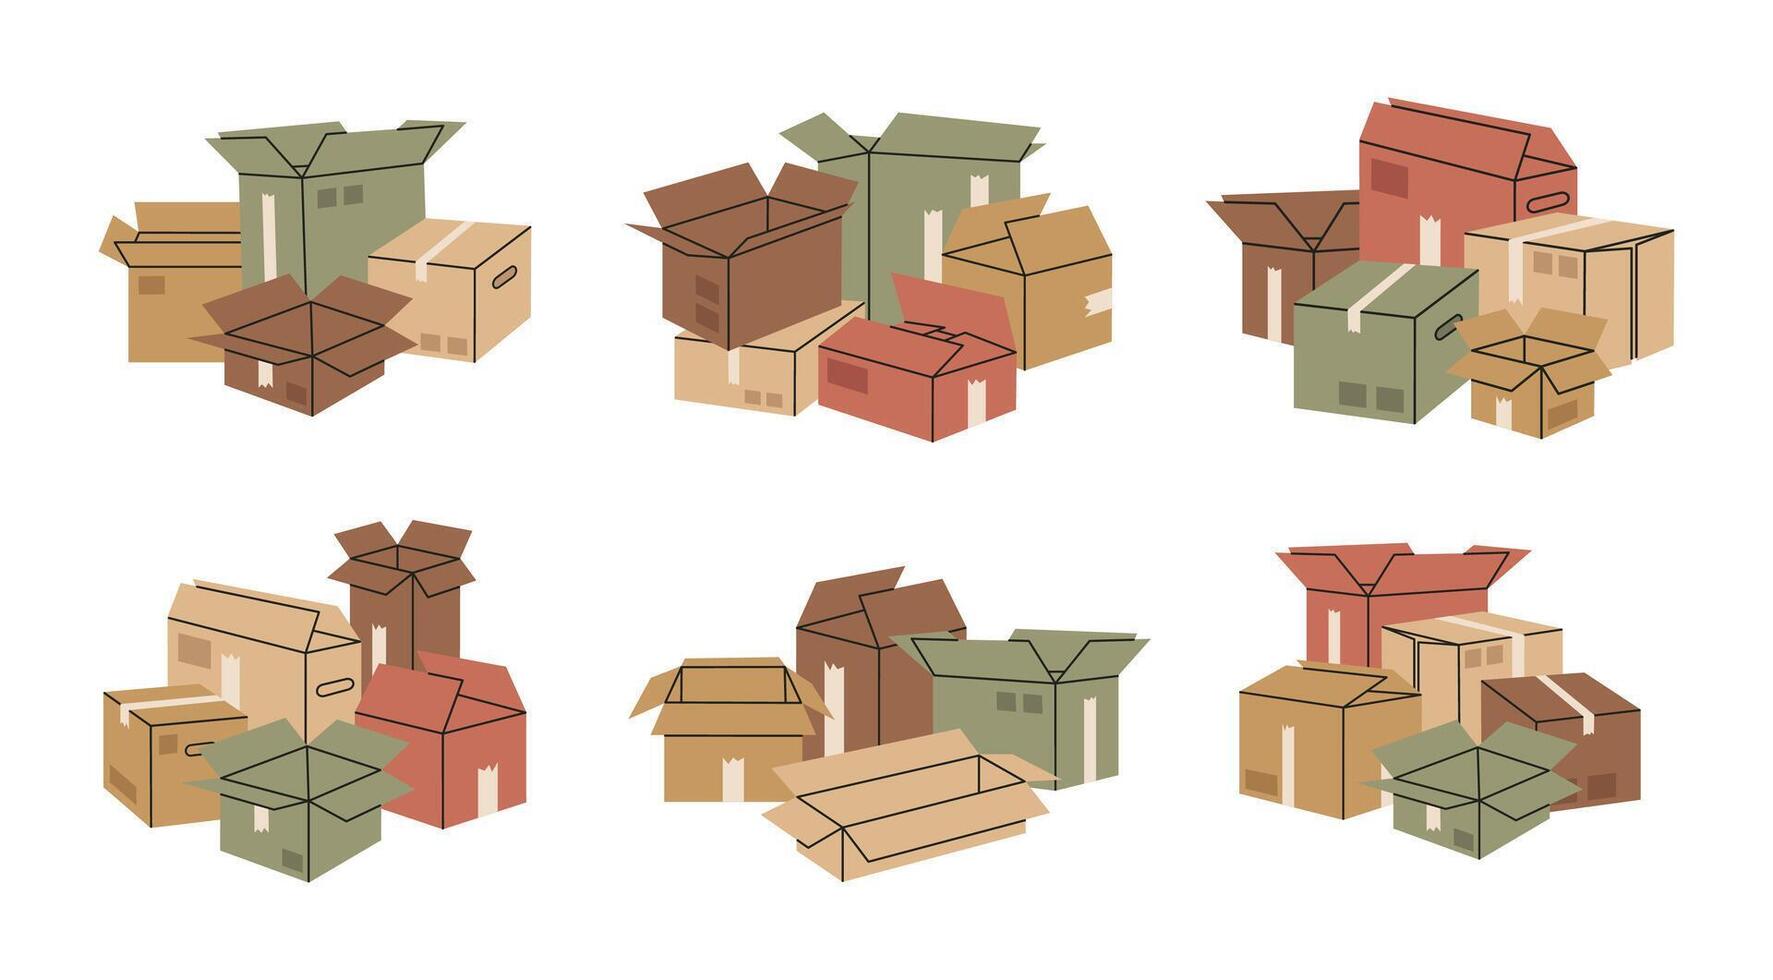 gestapeld karton dozen. hand- getrokken lading dozen, magazijn doos stapel. levering of in beweging concept vlak vector illustratie set. dozen stapel verzameling